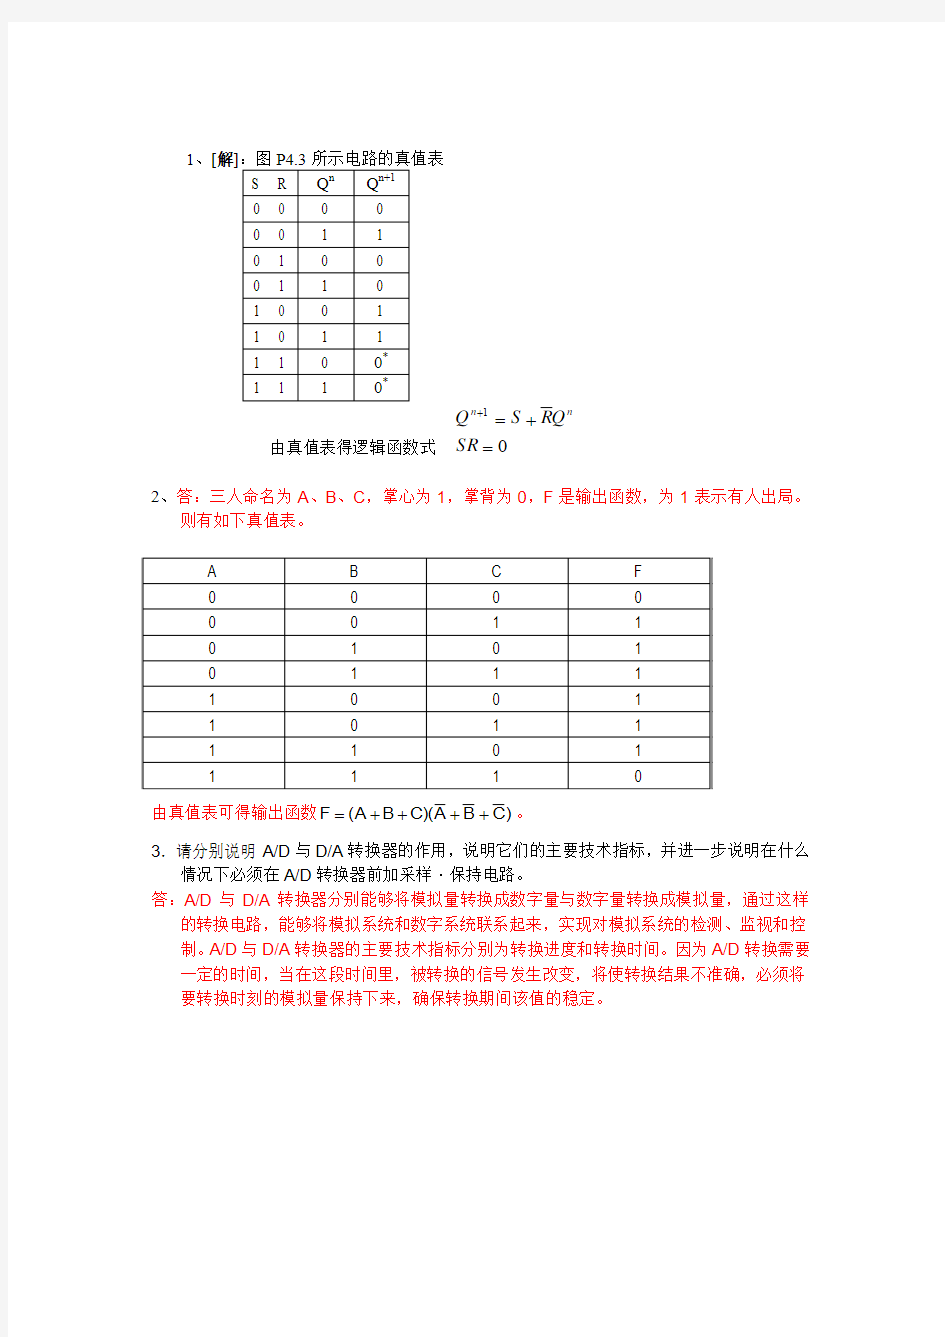 合肥学院 数字逻辑 肖连军 阶段测试二试卷1 (1)